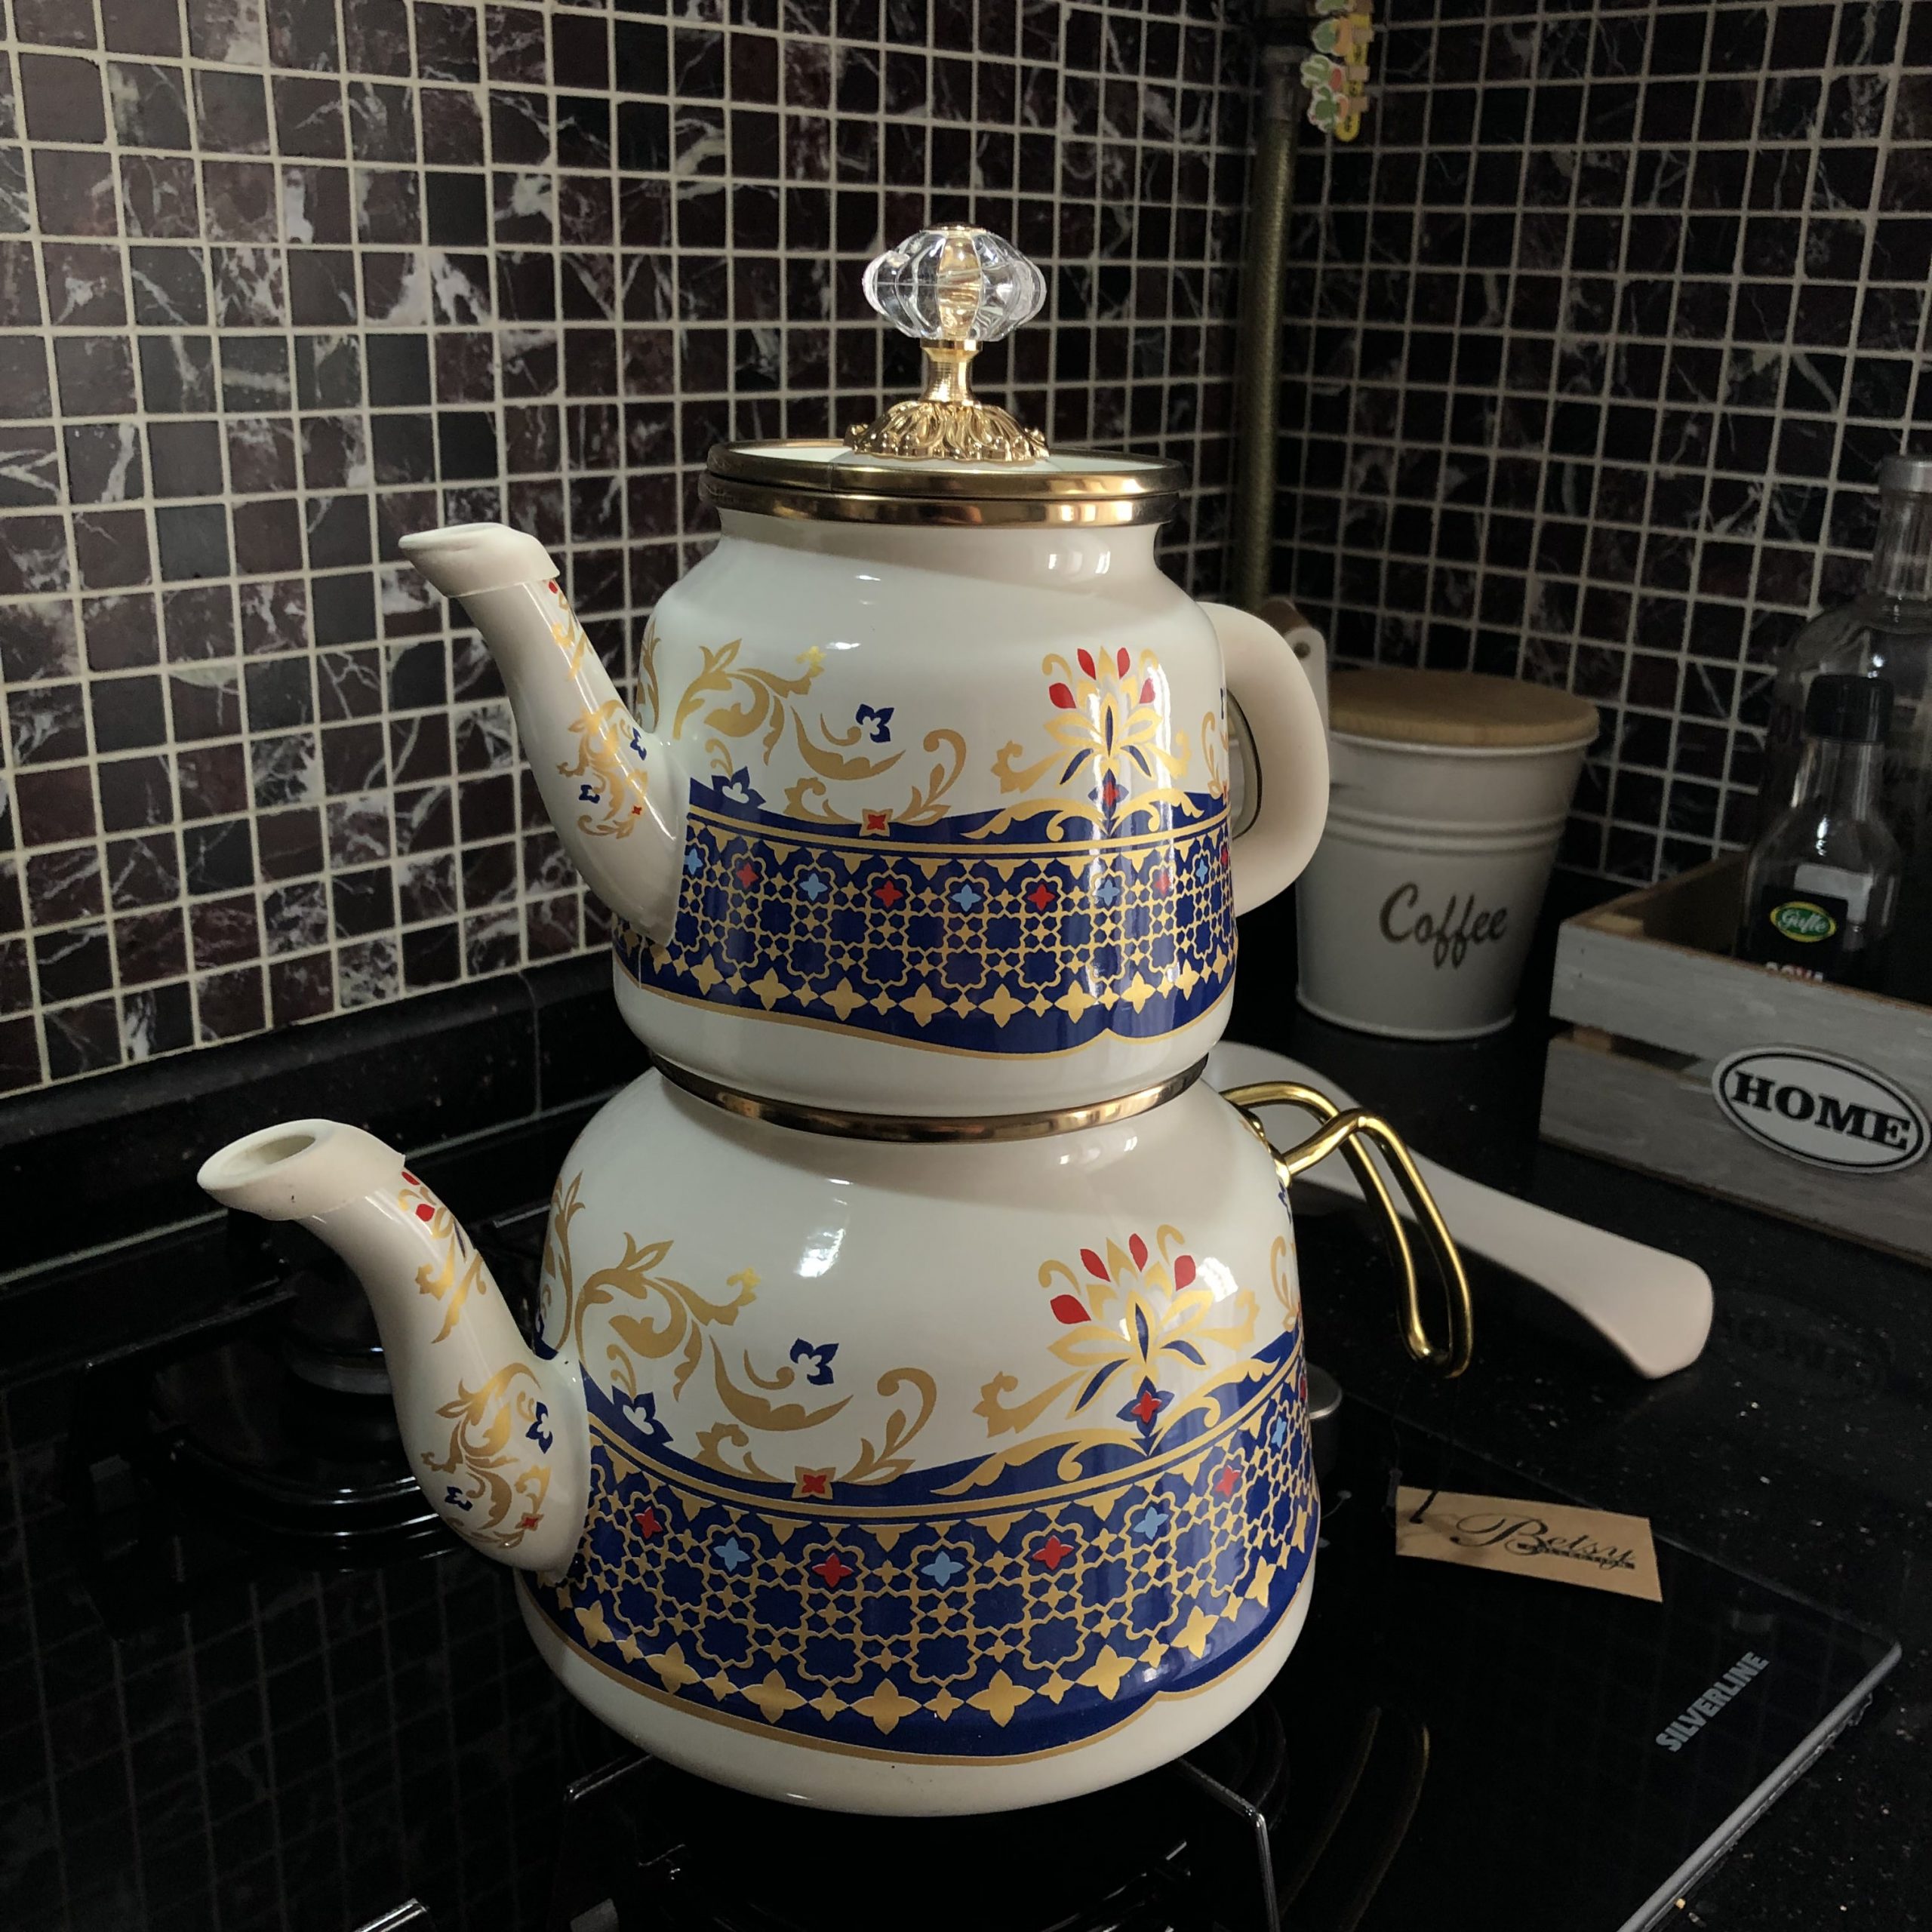 https://traditionalturk.com/wp-content/uploads/2021/08/vintage-pattern-enamel-turkish-tea-pot-kettle-scaled.jpeg